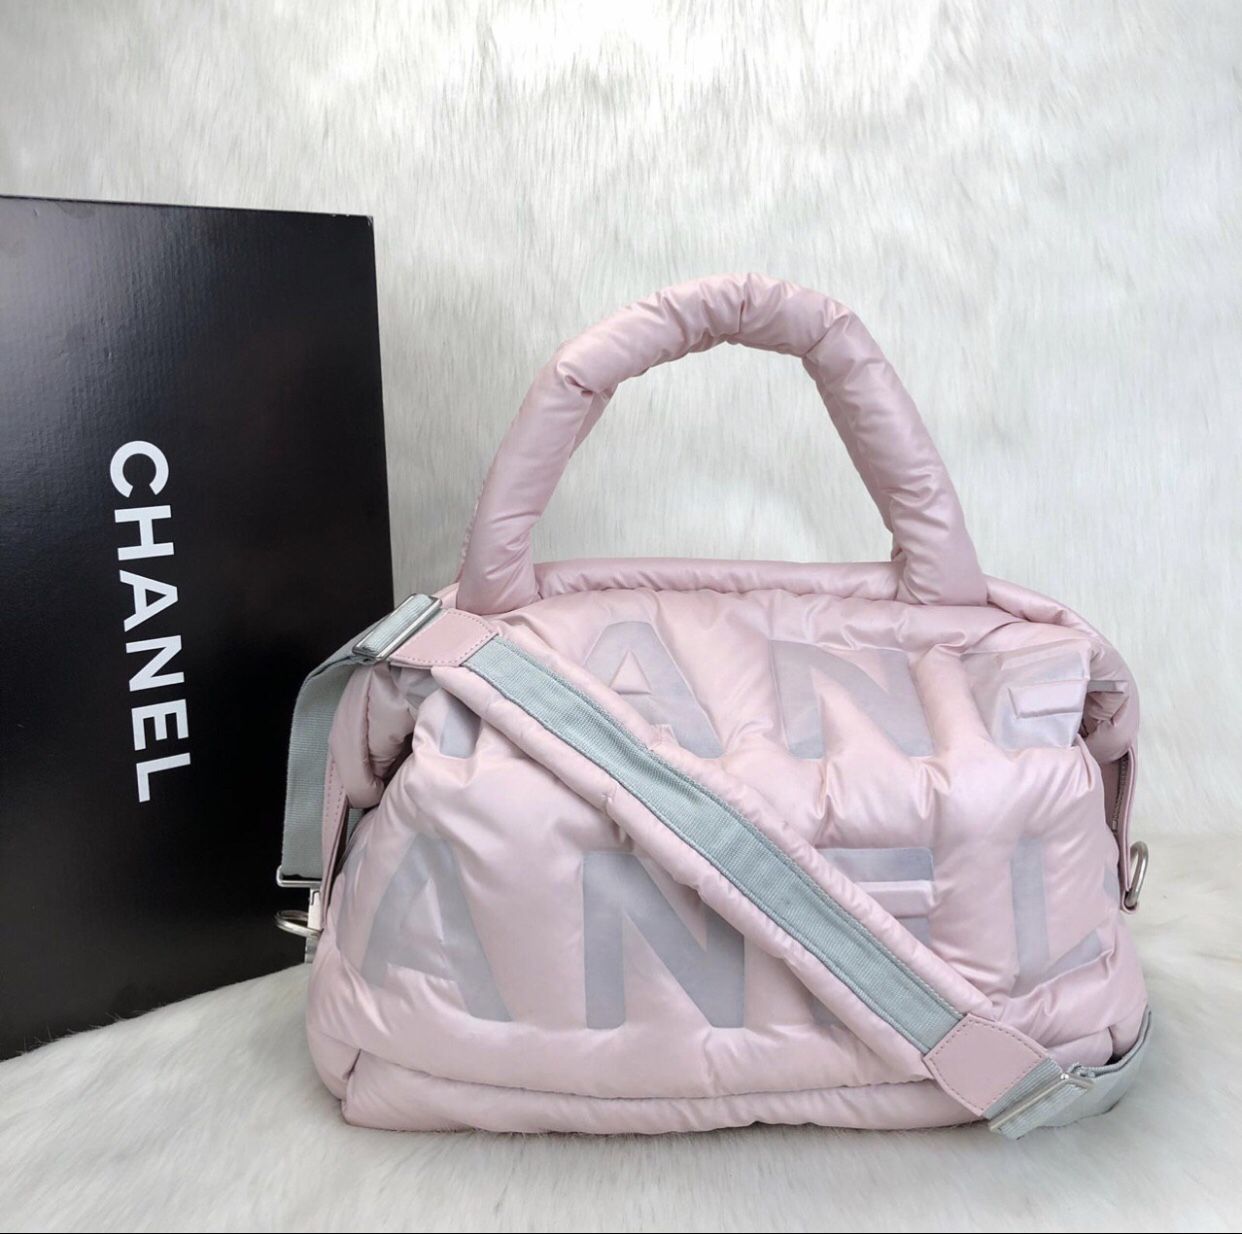 Chanel Doudoune Backpack Embossed Nylon Medium Blue 2325631